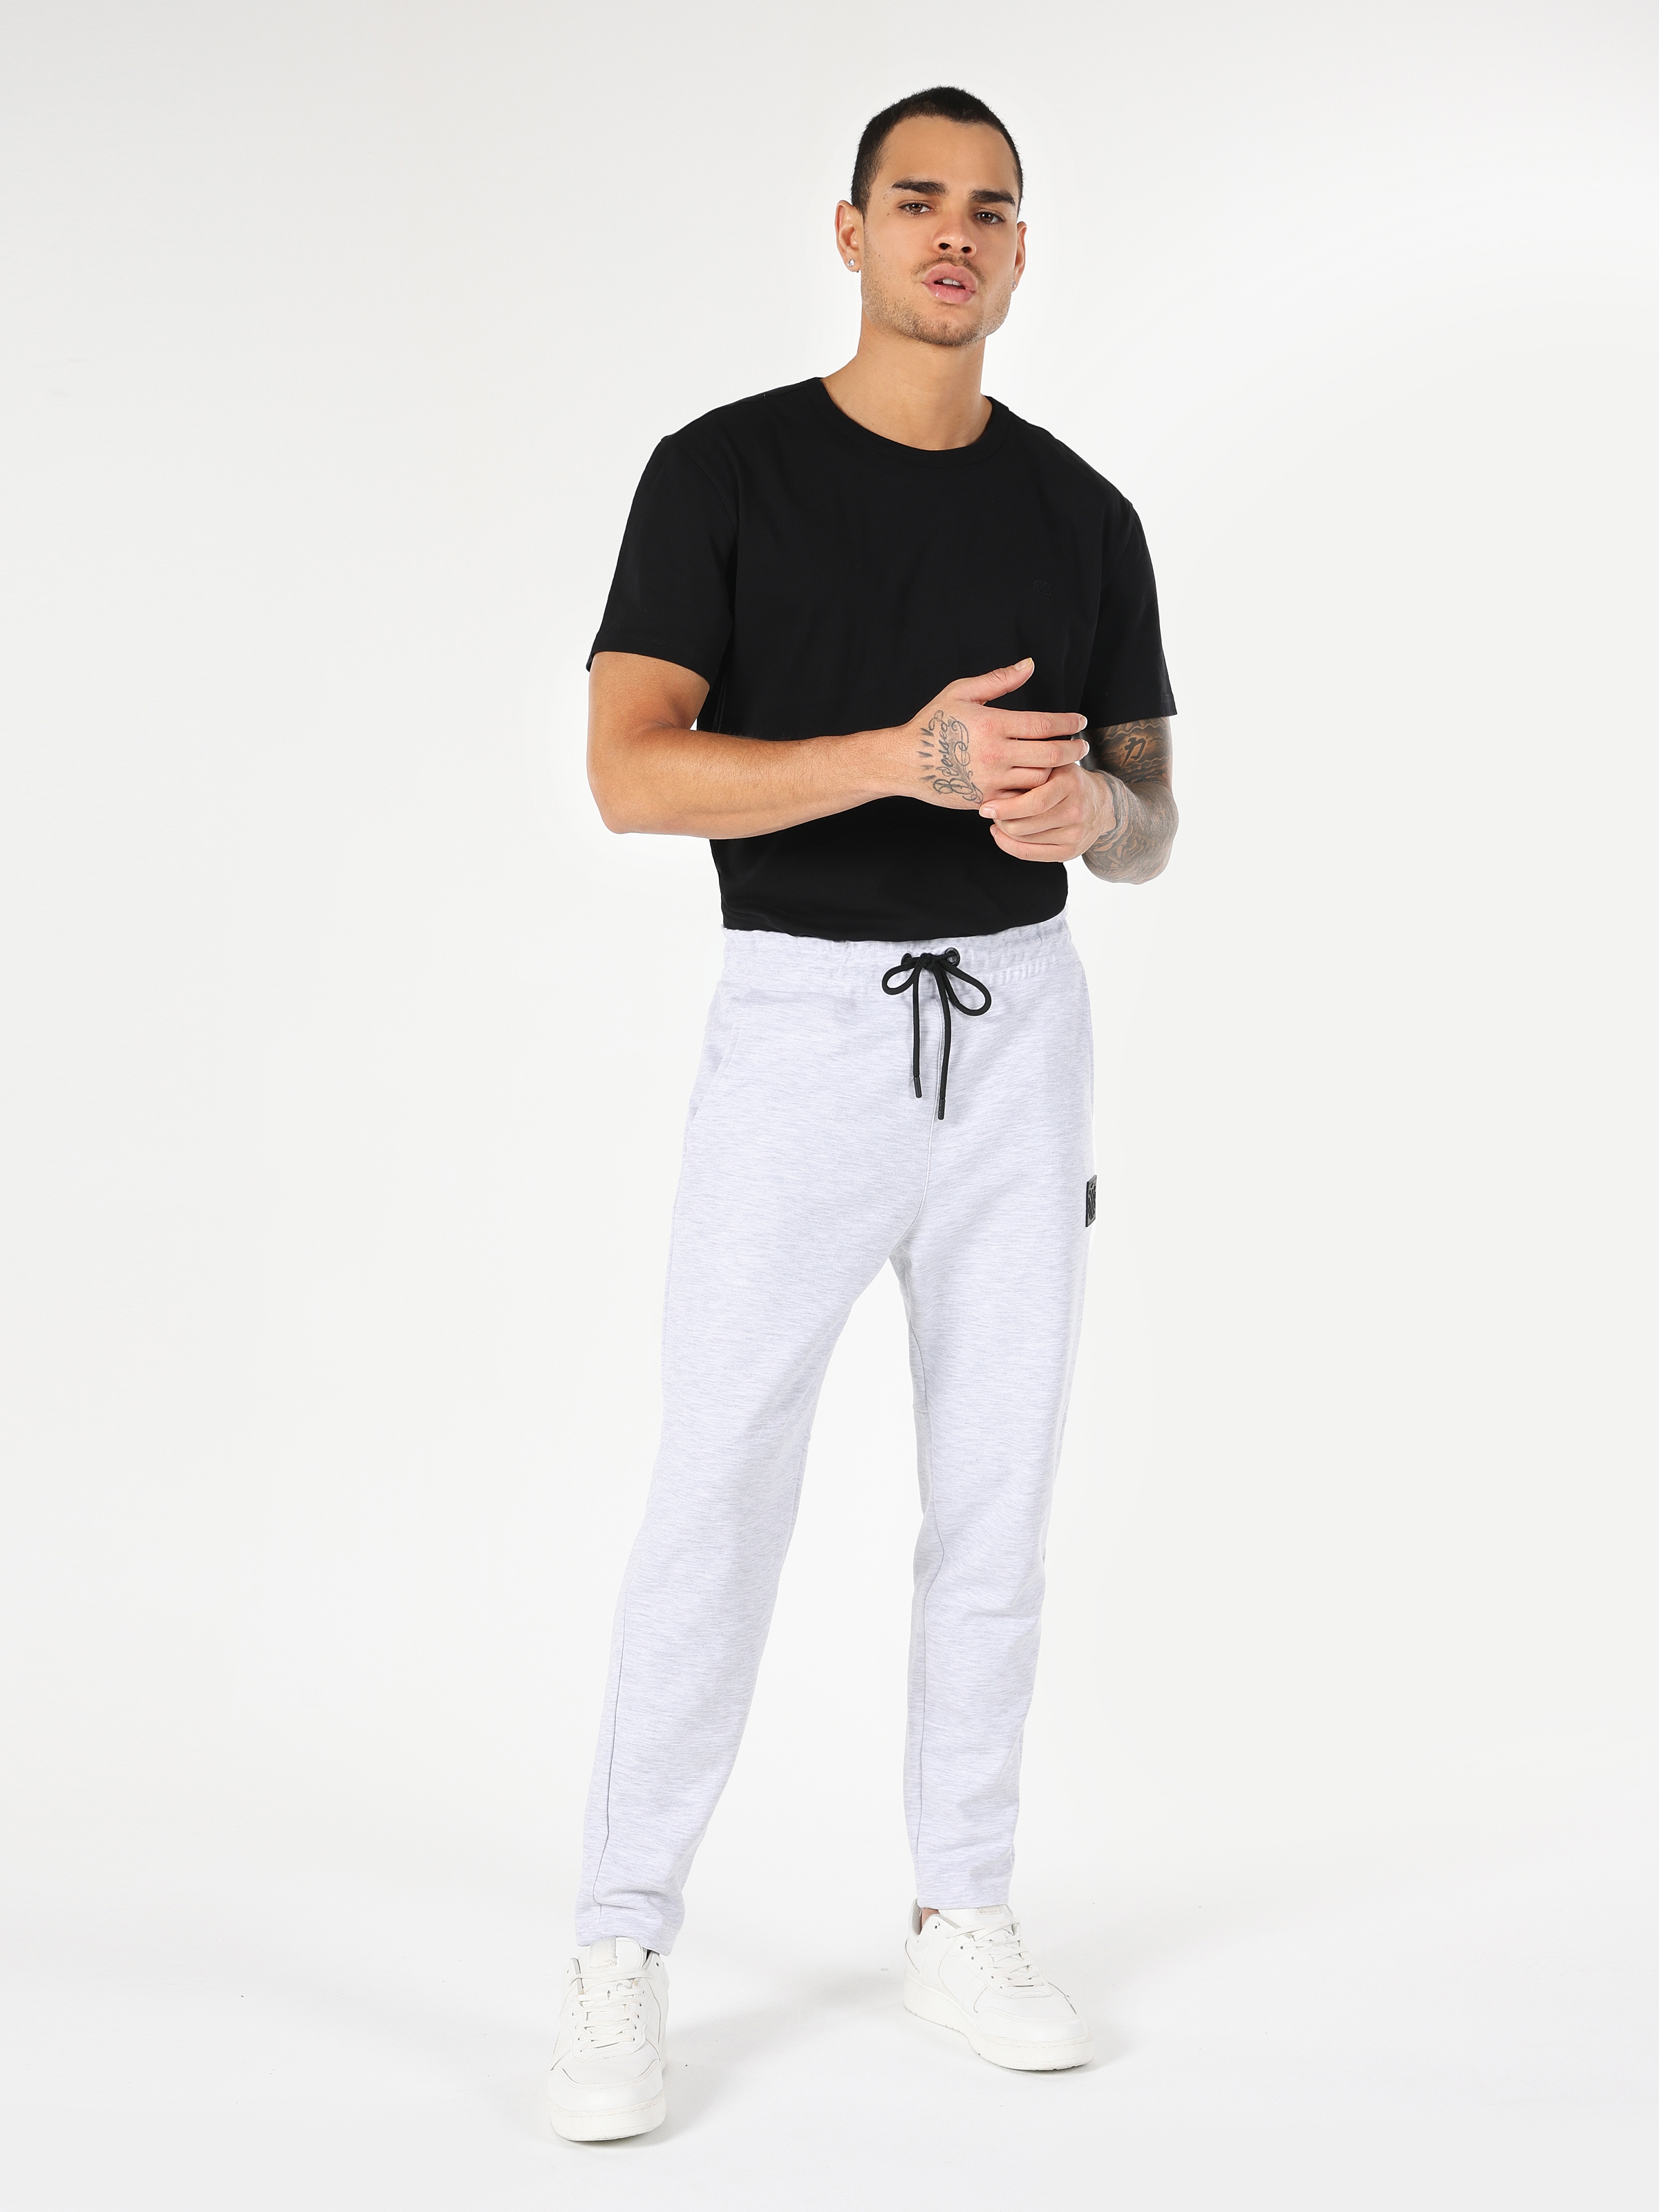 Afficher les détails de Pantalon De Survêtement Gris Taille Moyenne Pour Homme, Coupe Slim